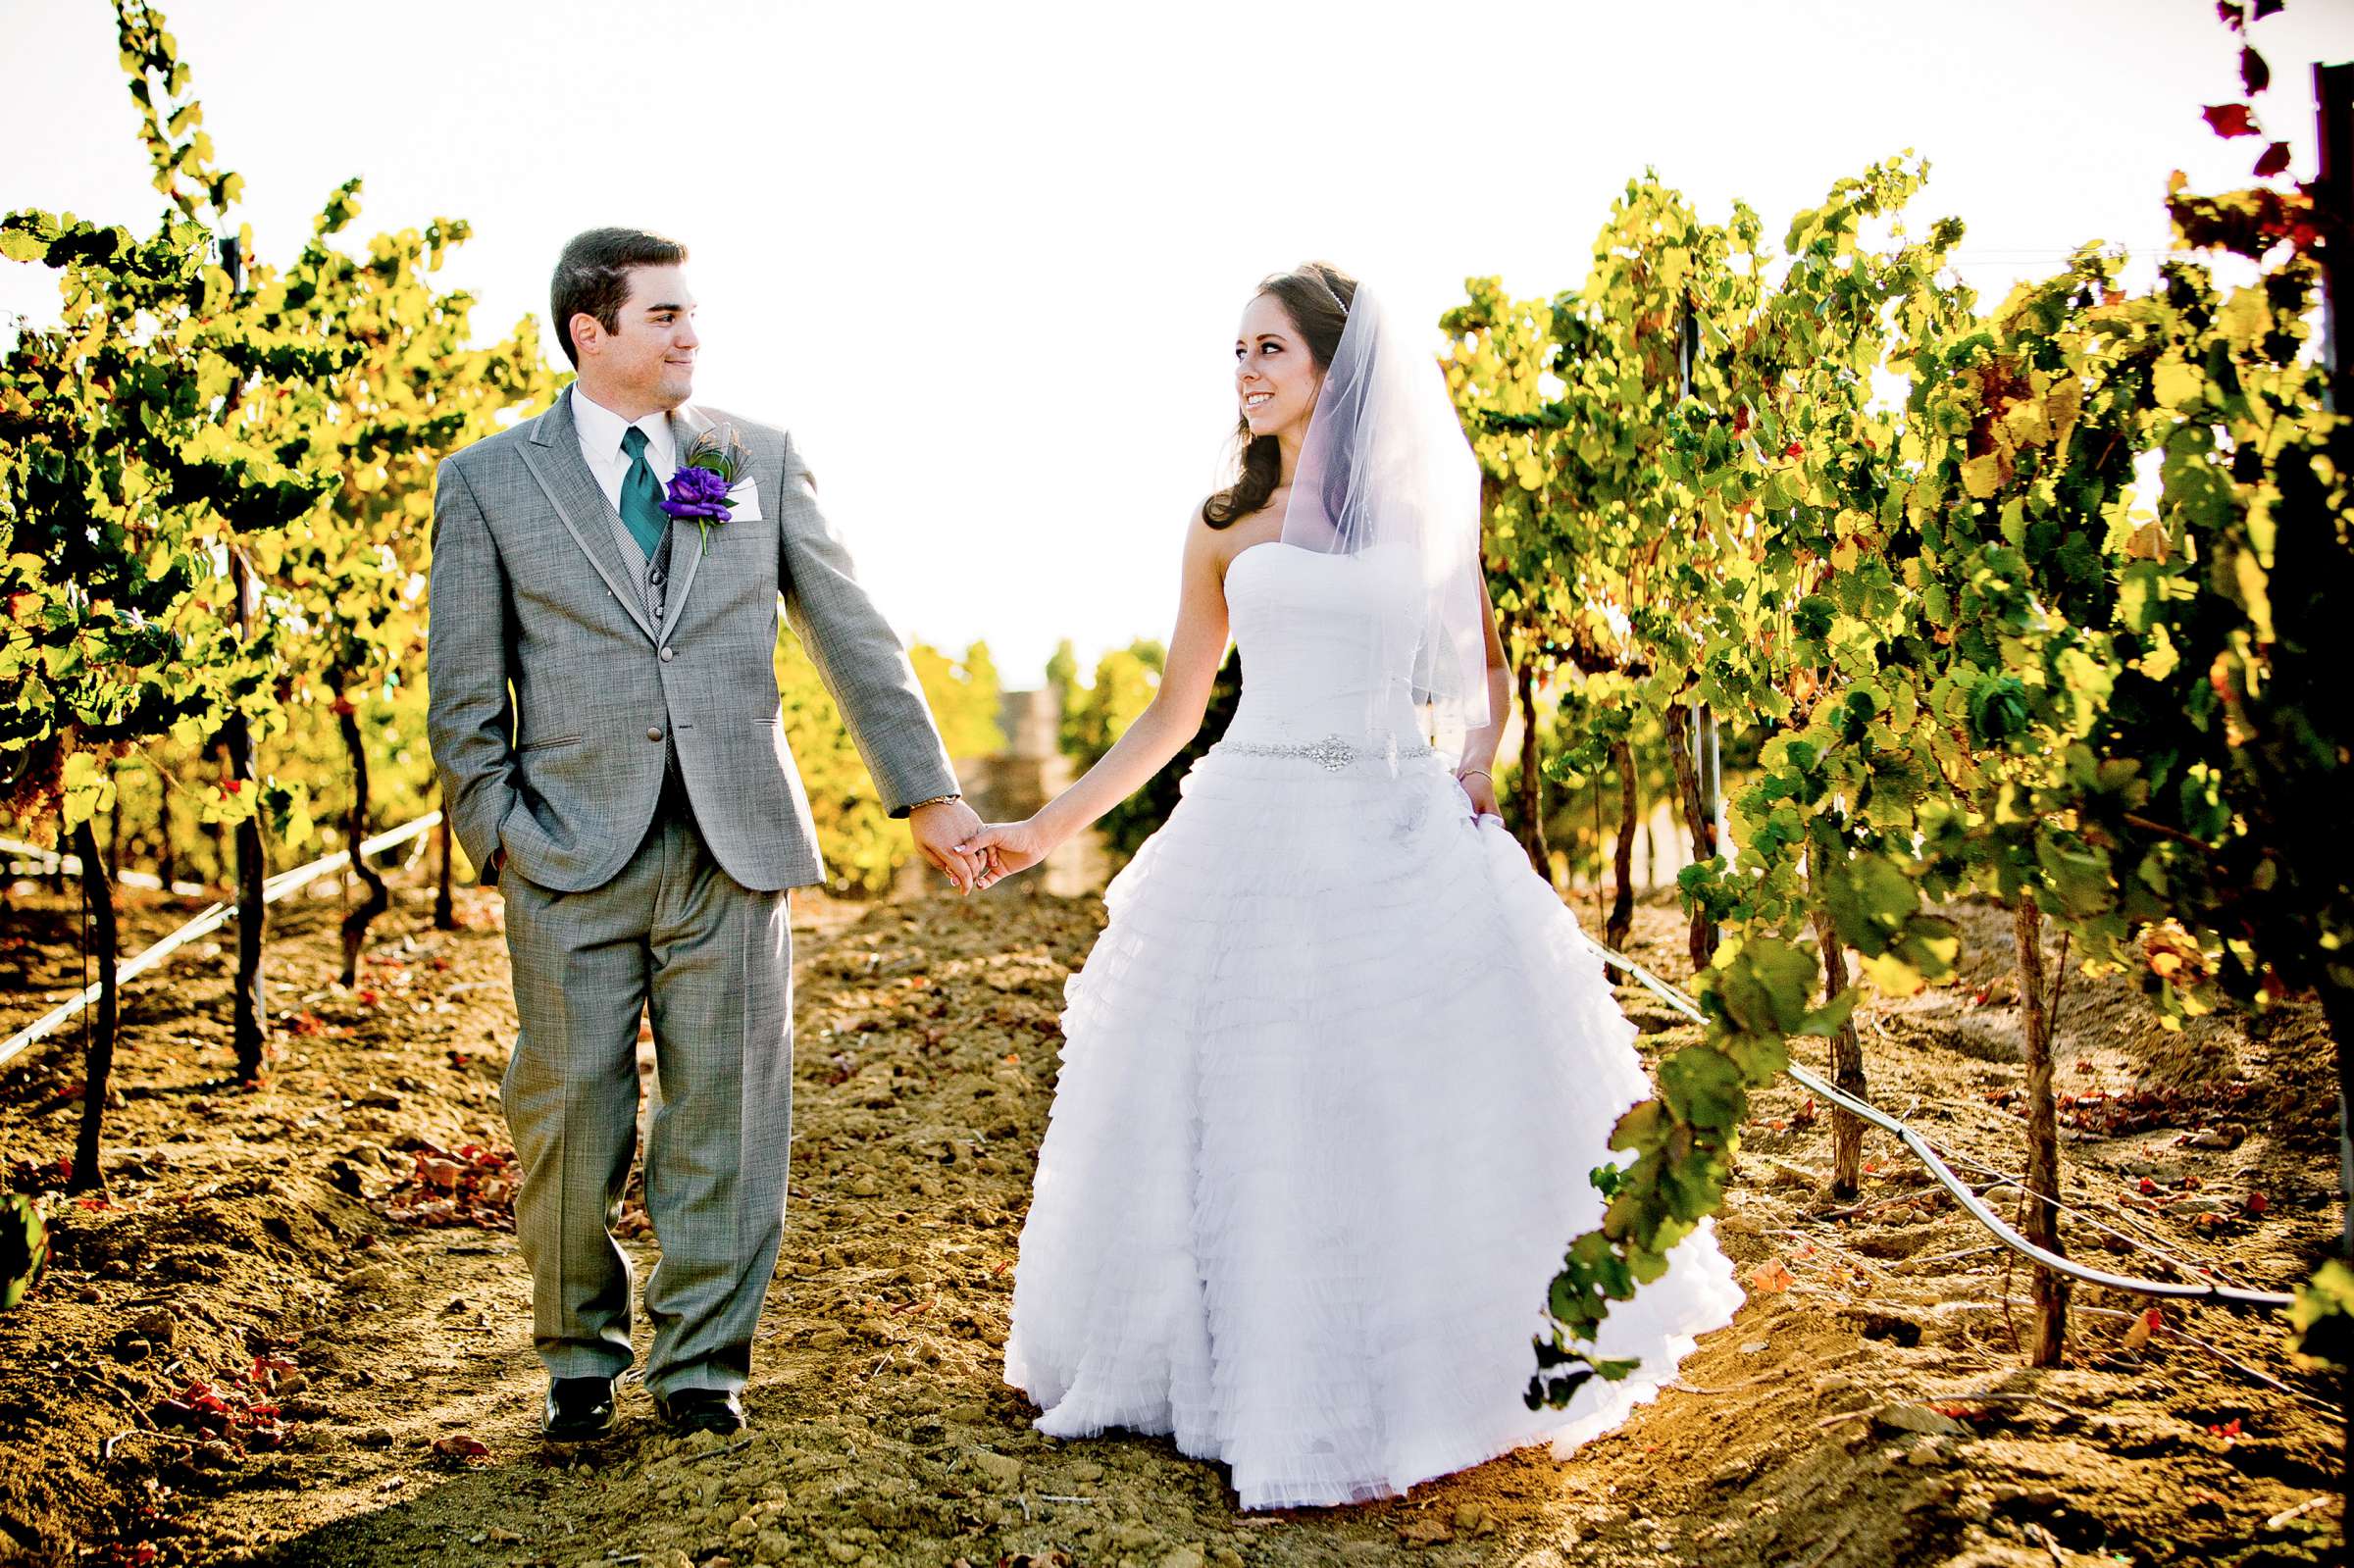 Mount Palomar Winery Wedding, Brandi and Jason Wedding Photo #321648 by True Photography